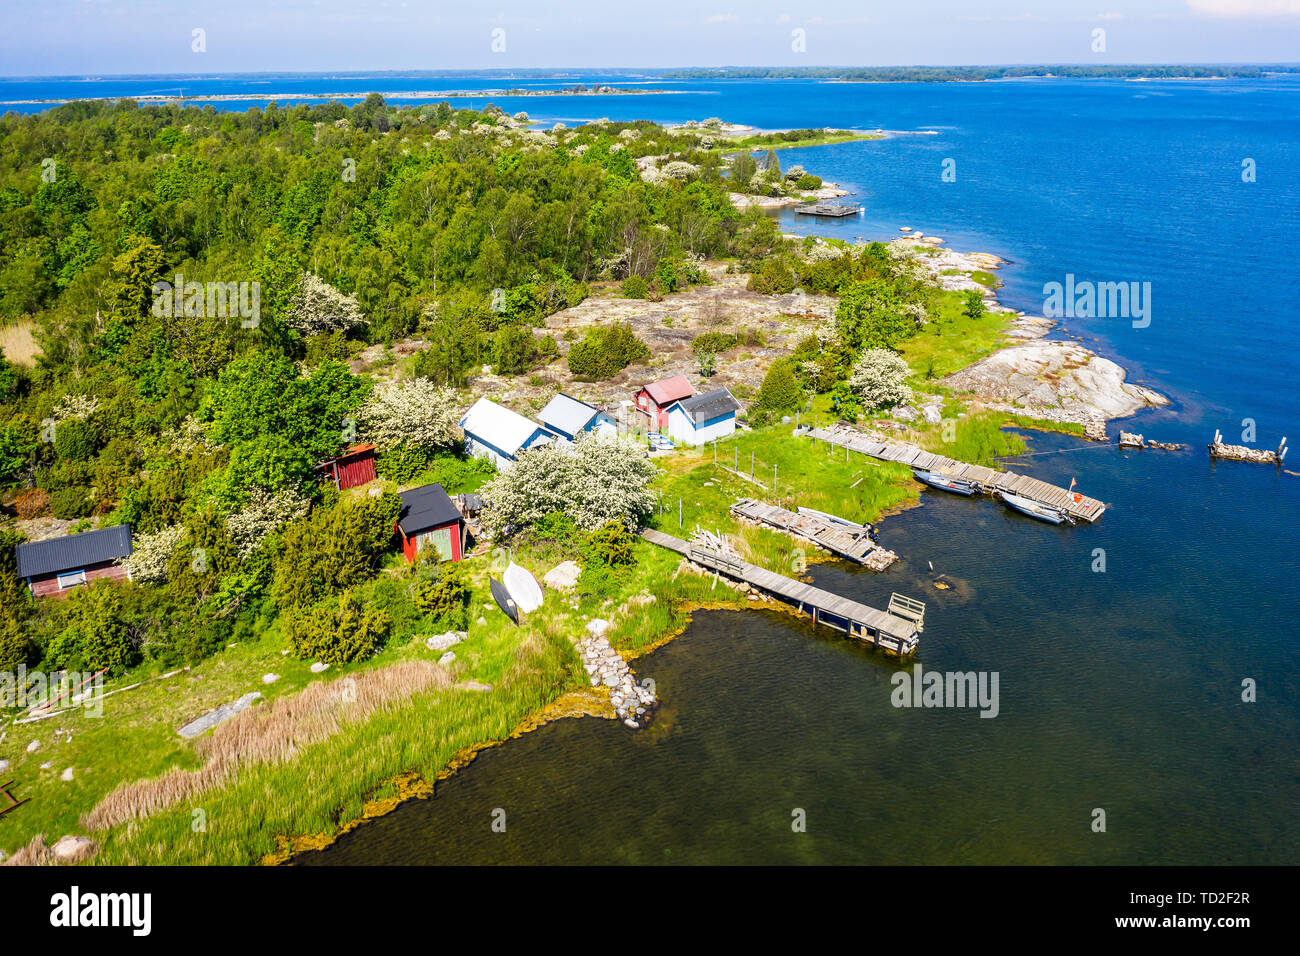 Vue typique de Blekinge archipel dans le sud de la Suède, sur une journée ensoleillée. Cabanes de pêche traditionnelles et les jetées sur les îles vertes. Banque D'Images